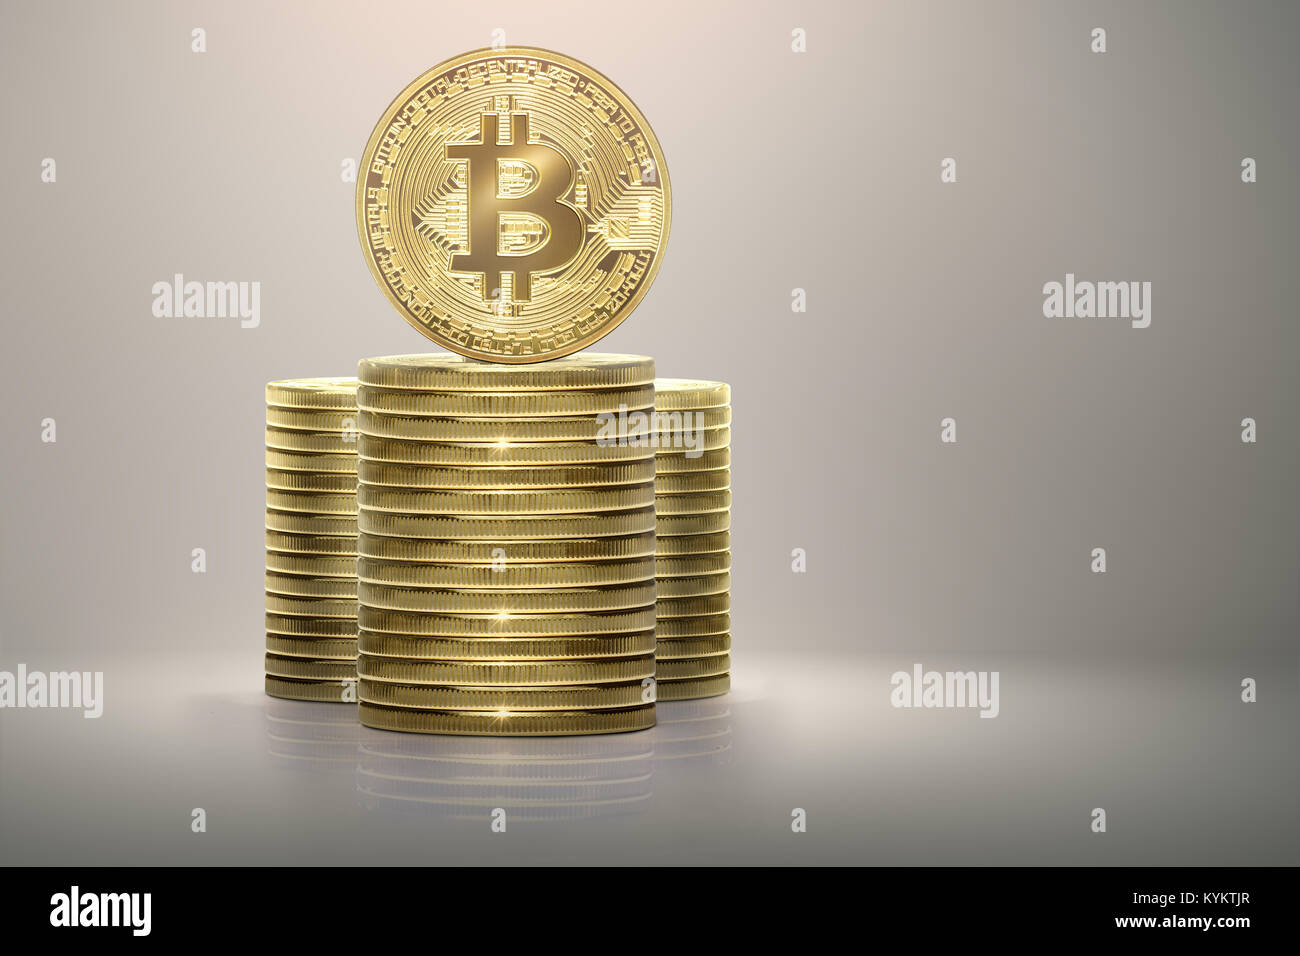 Bitcoin or debout sur pile de pièces en argent sur fond lumineux Banque D'Images